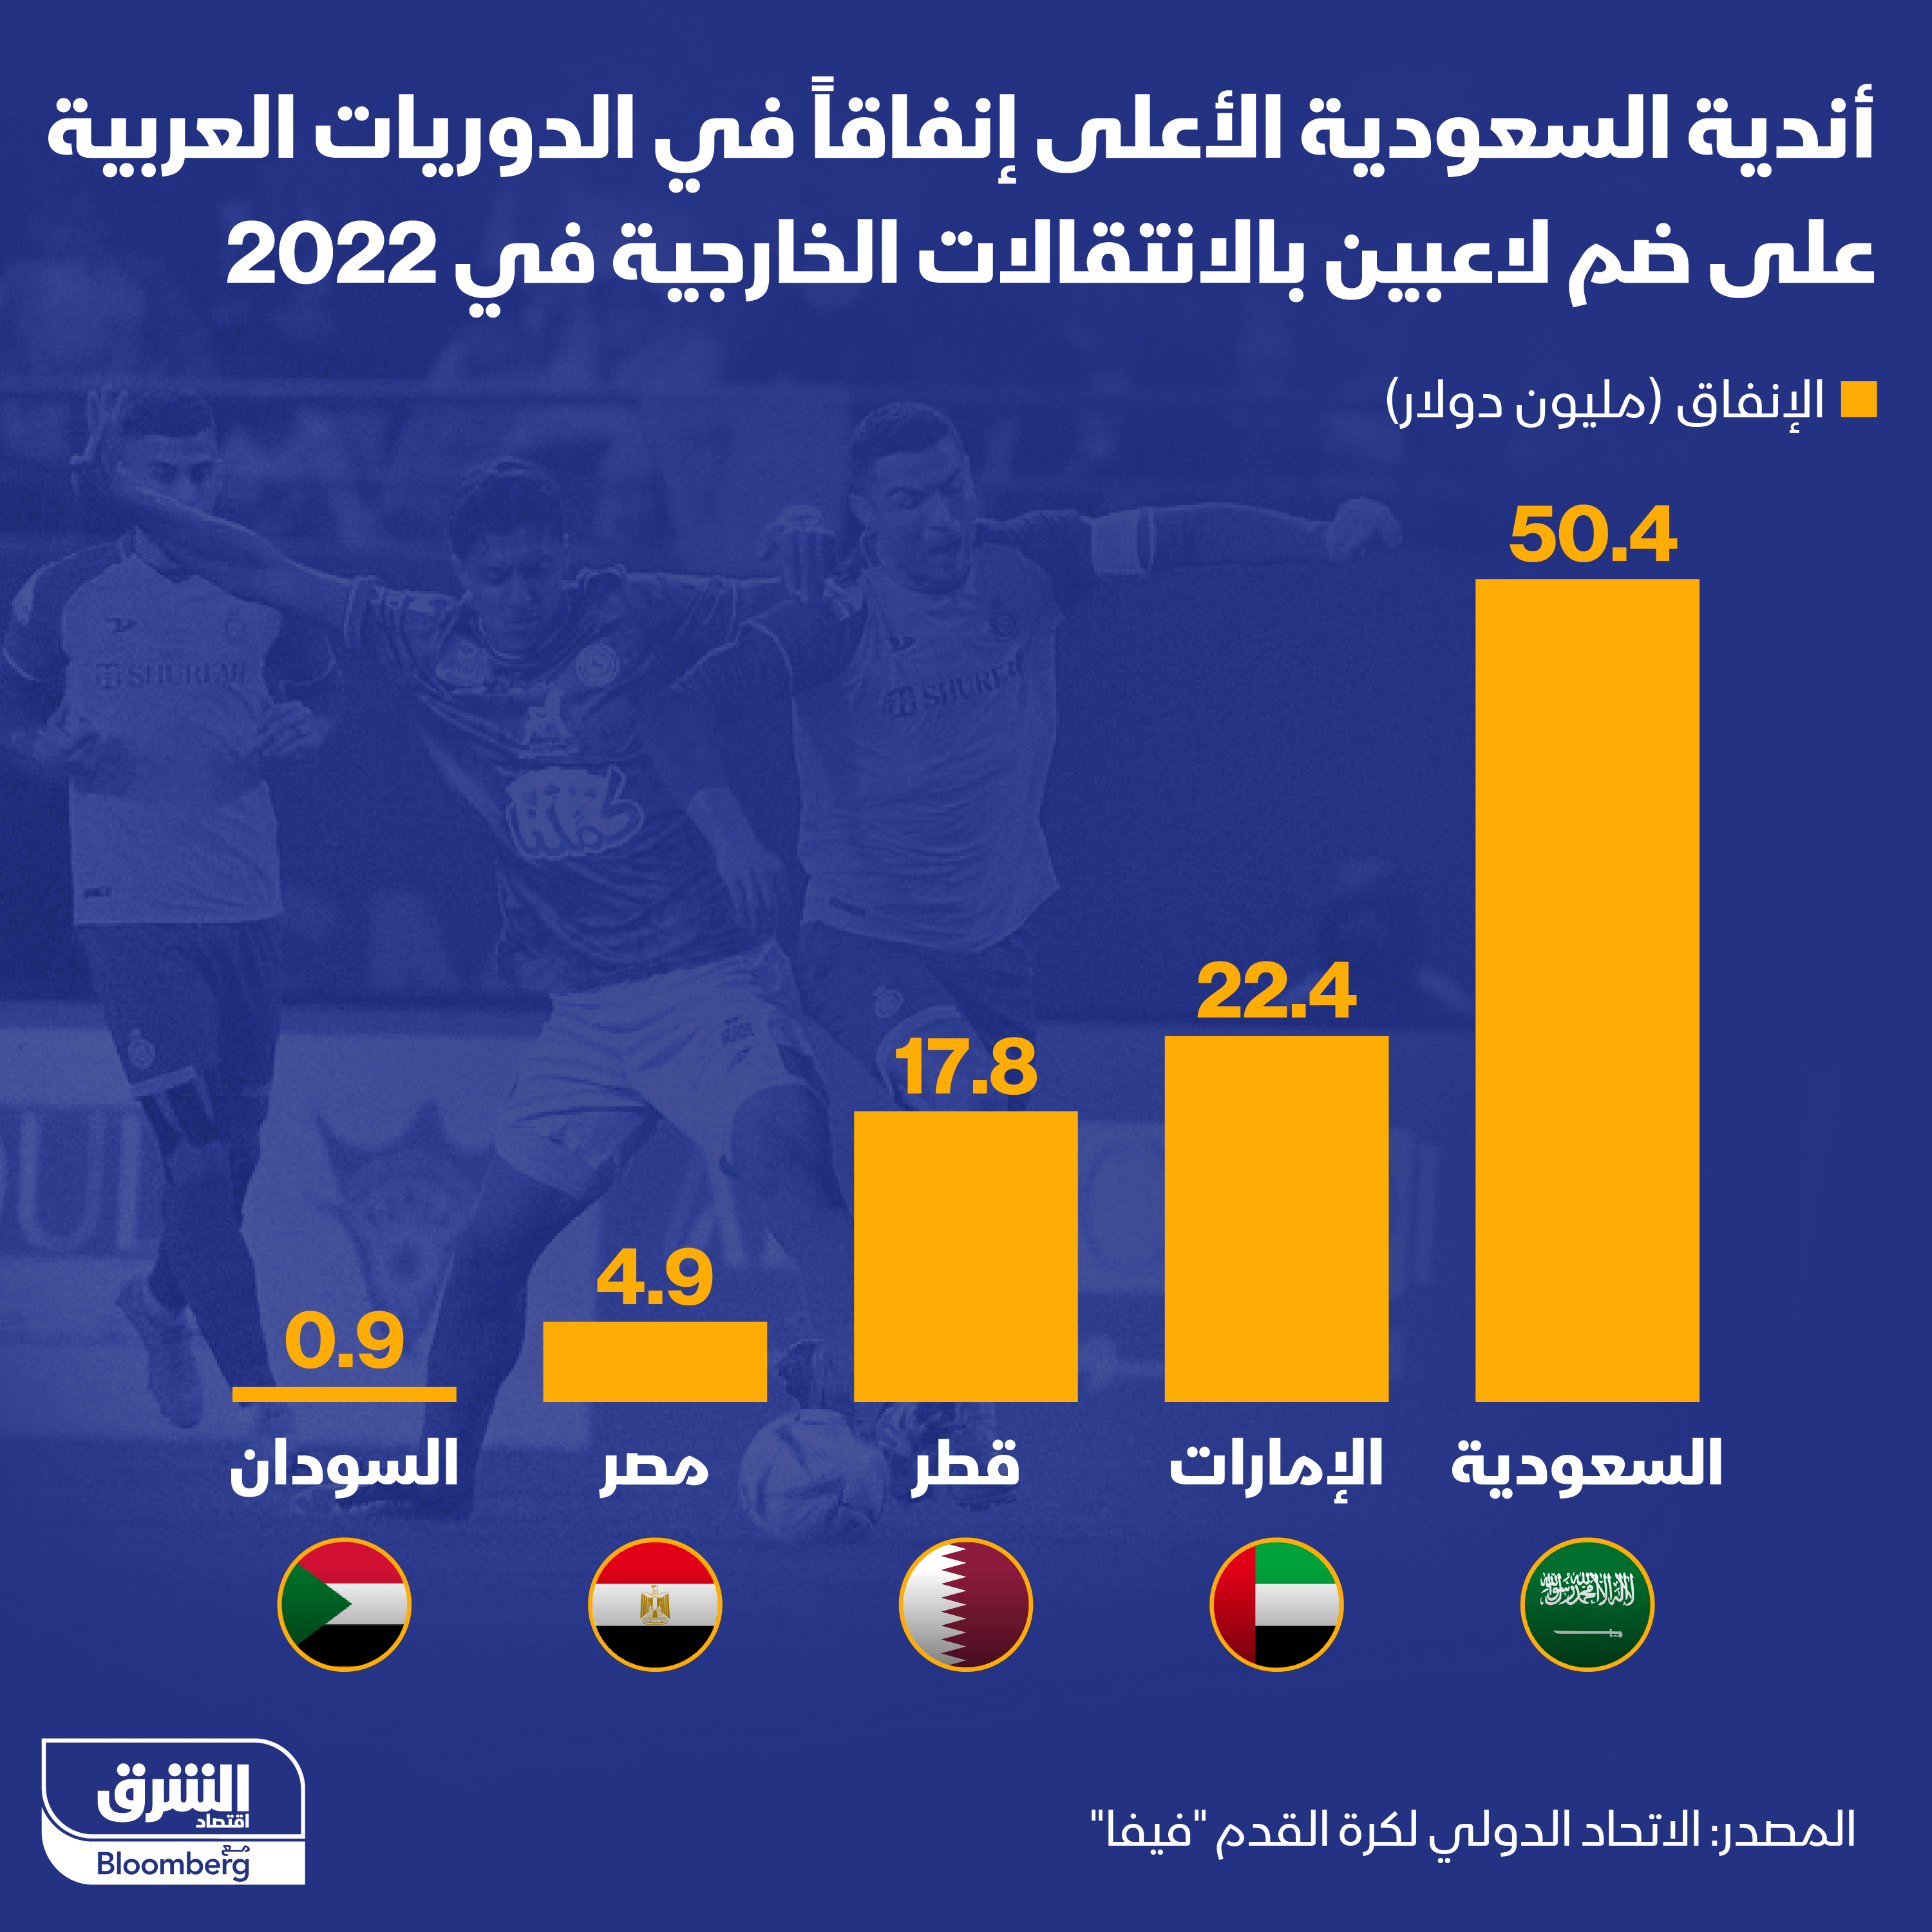 الدوريات العربية الأعلى إنفاقاً على شراء لاعبين من الخارج في 2022